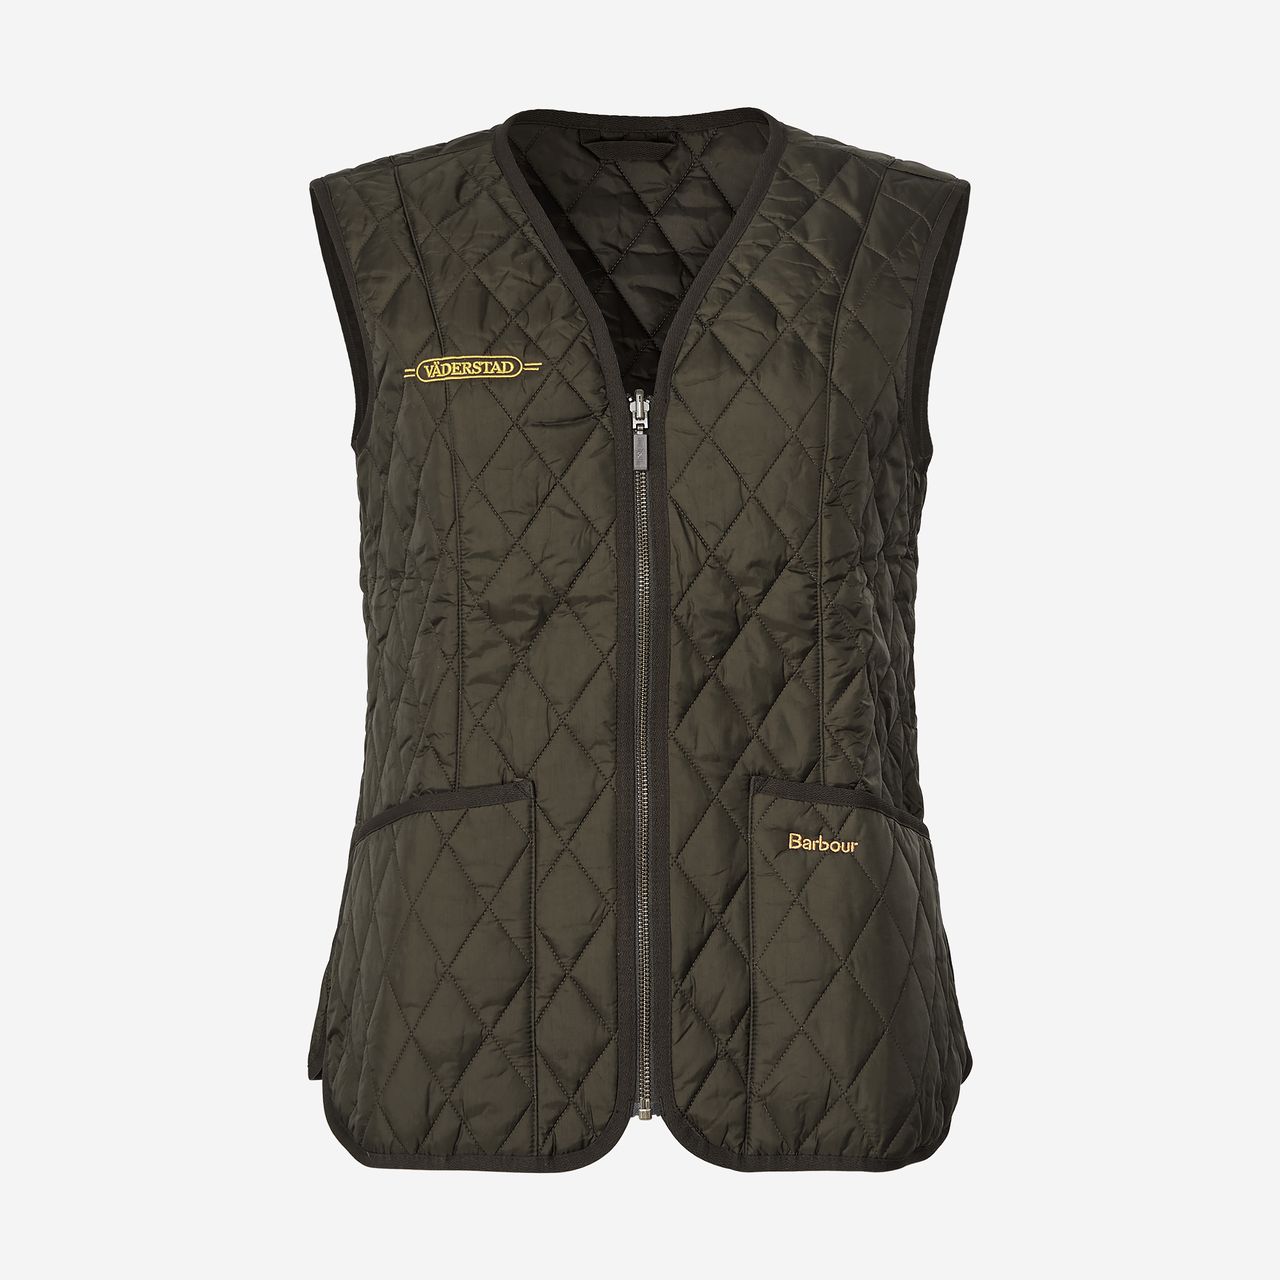 Barbour vest (women's)